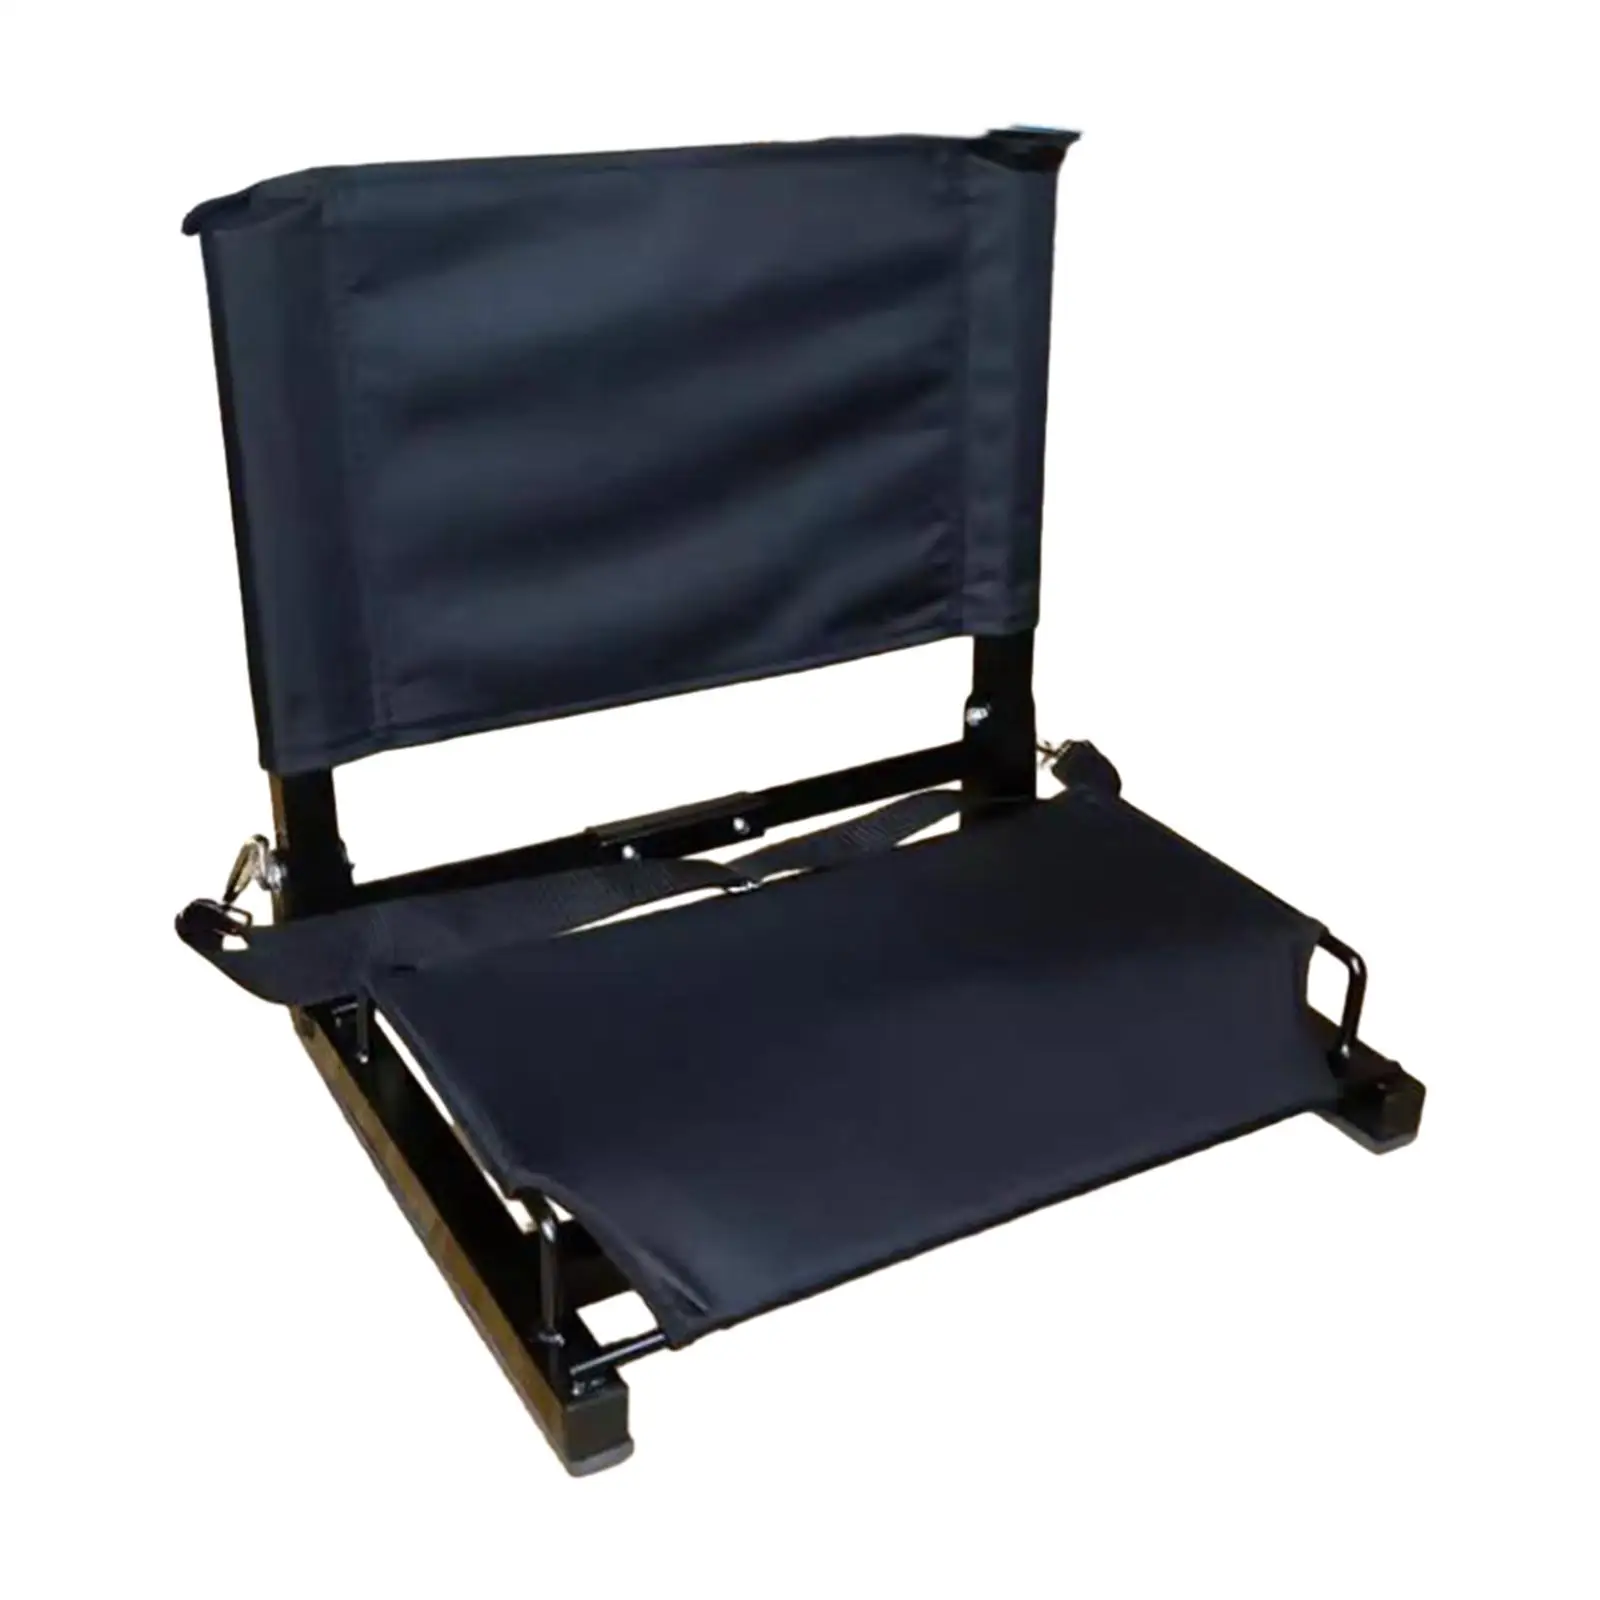 

Сиденье Bleacher с поддержкой спины, складное легкое портативное сиденье для стадиона